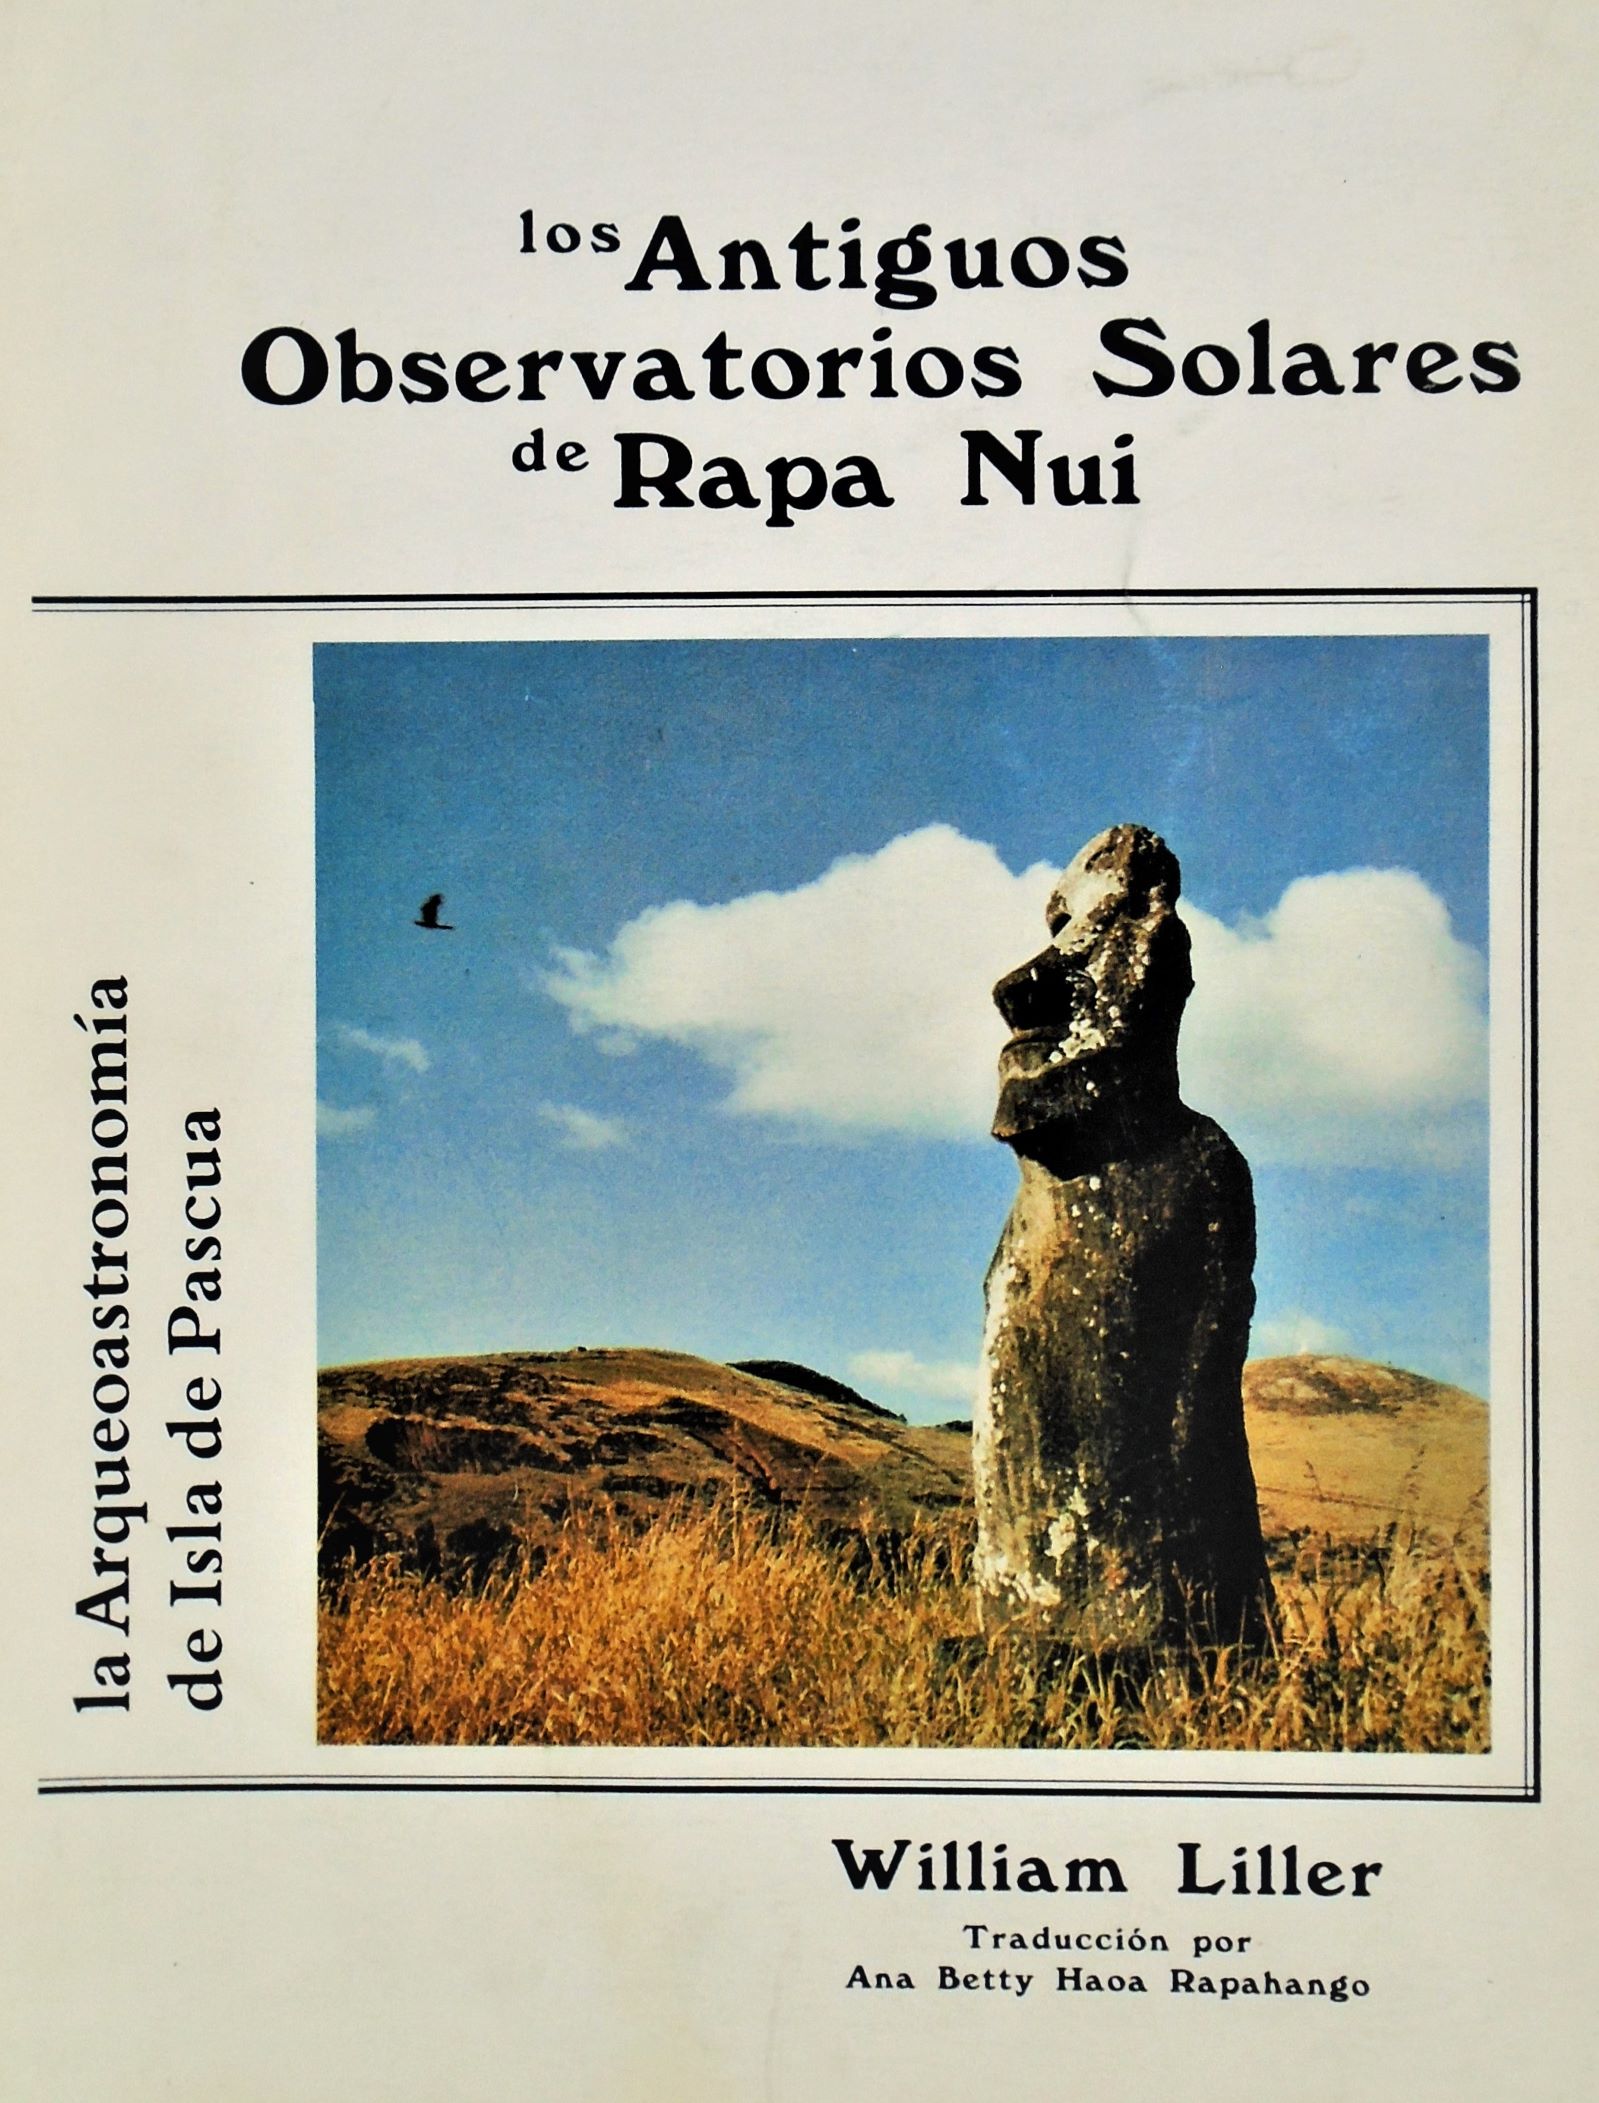 William Liller - Los antiguos observatorios solares de Rapa Nui